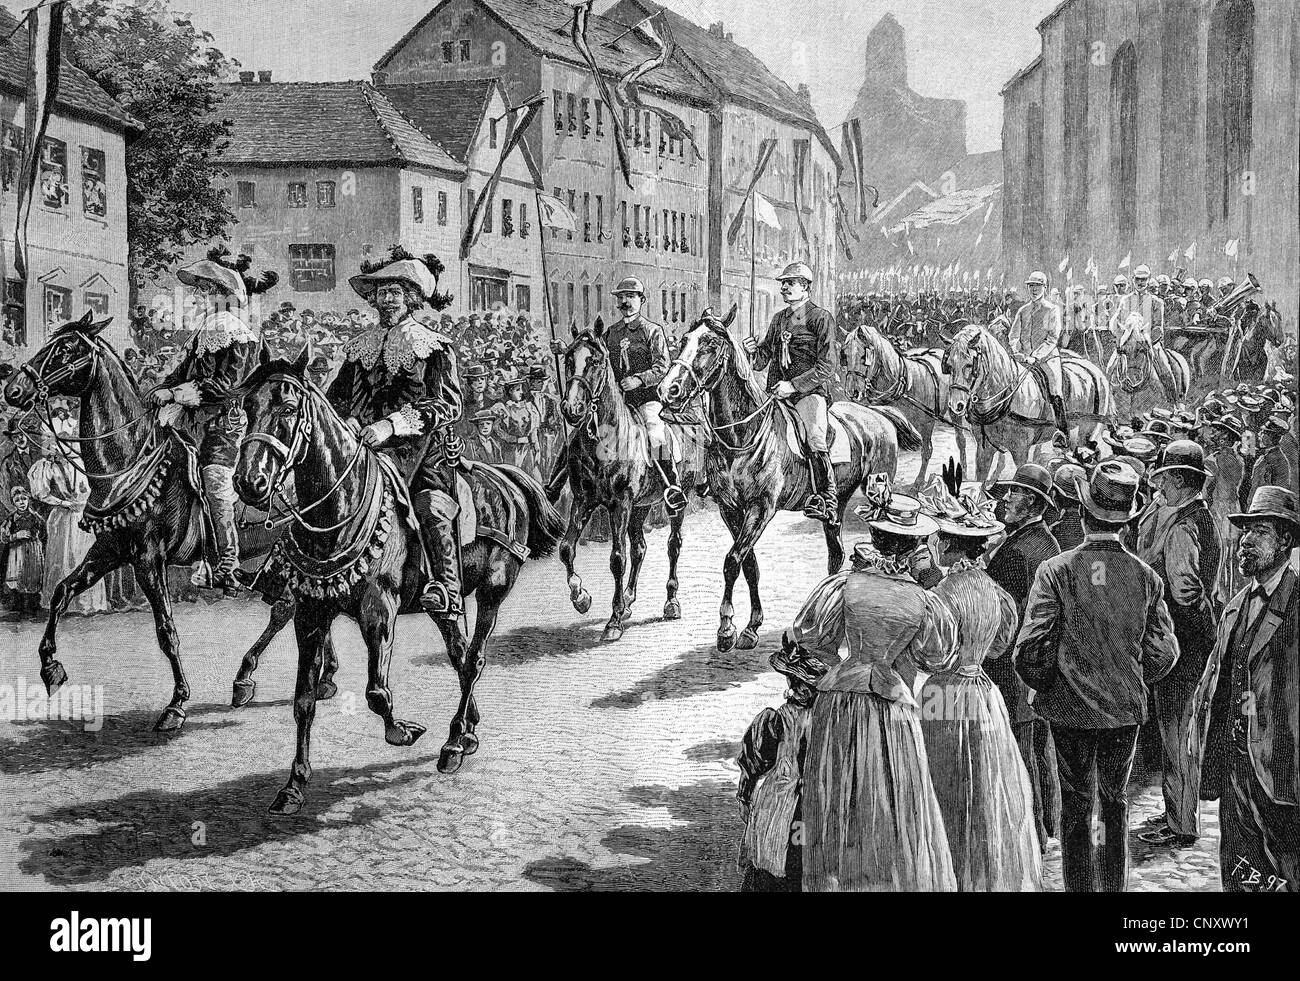 Ringreiterfest Gymkhana, Alsen, Sonderborg, Dänemark, historische Holzstich, ca. 1897 Stockfoto